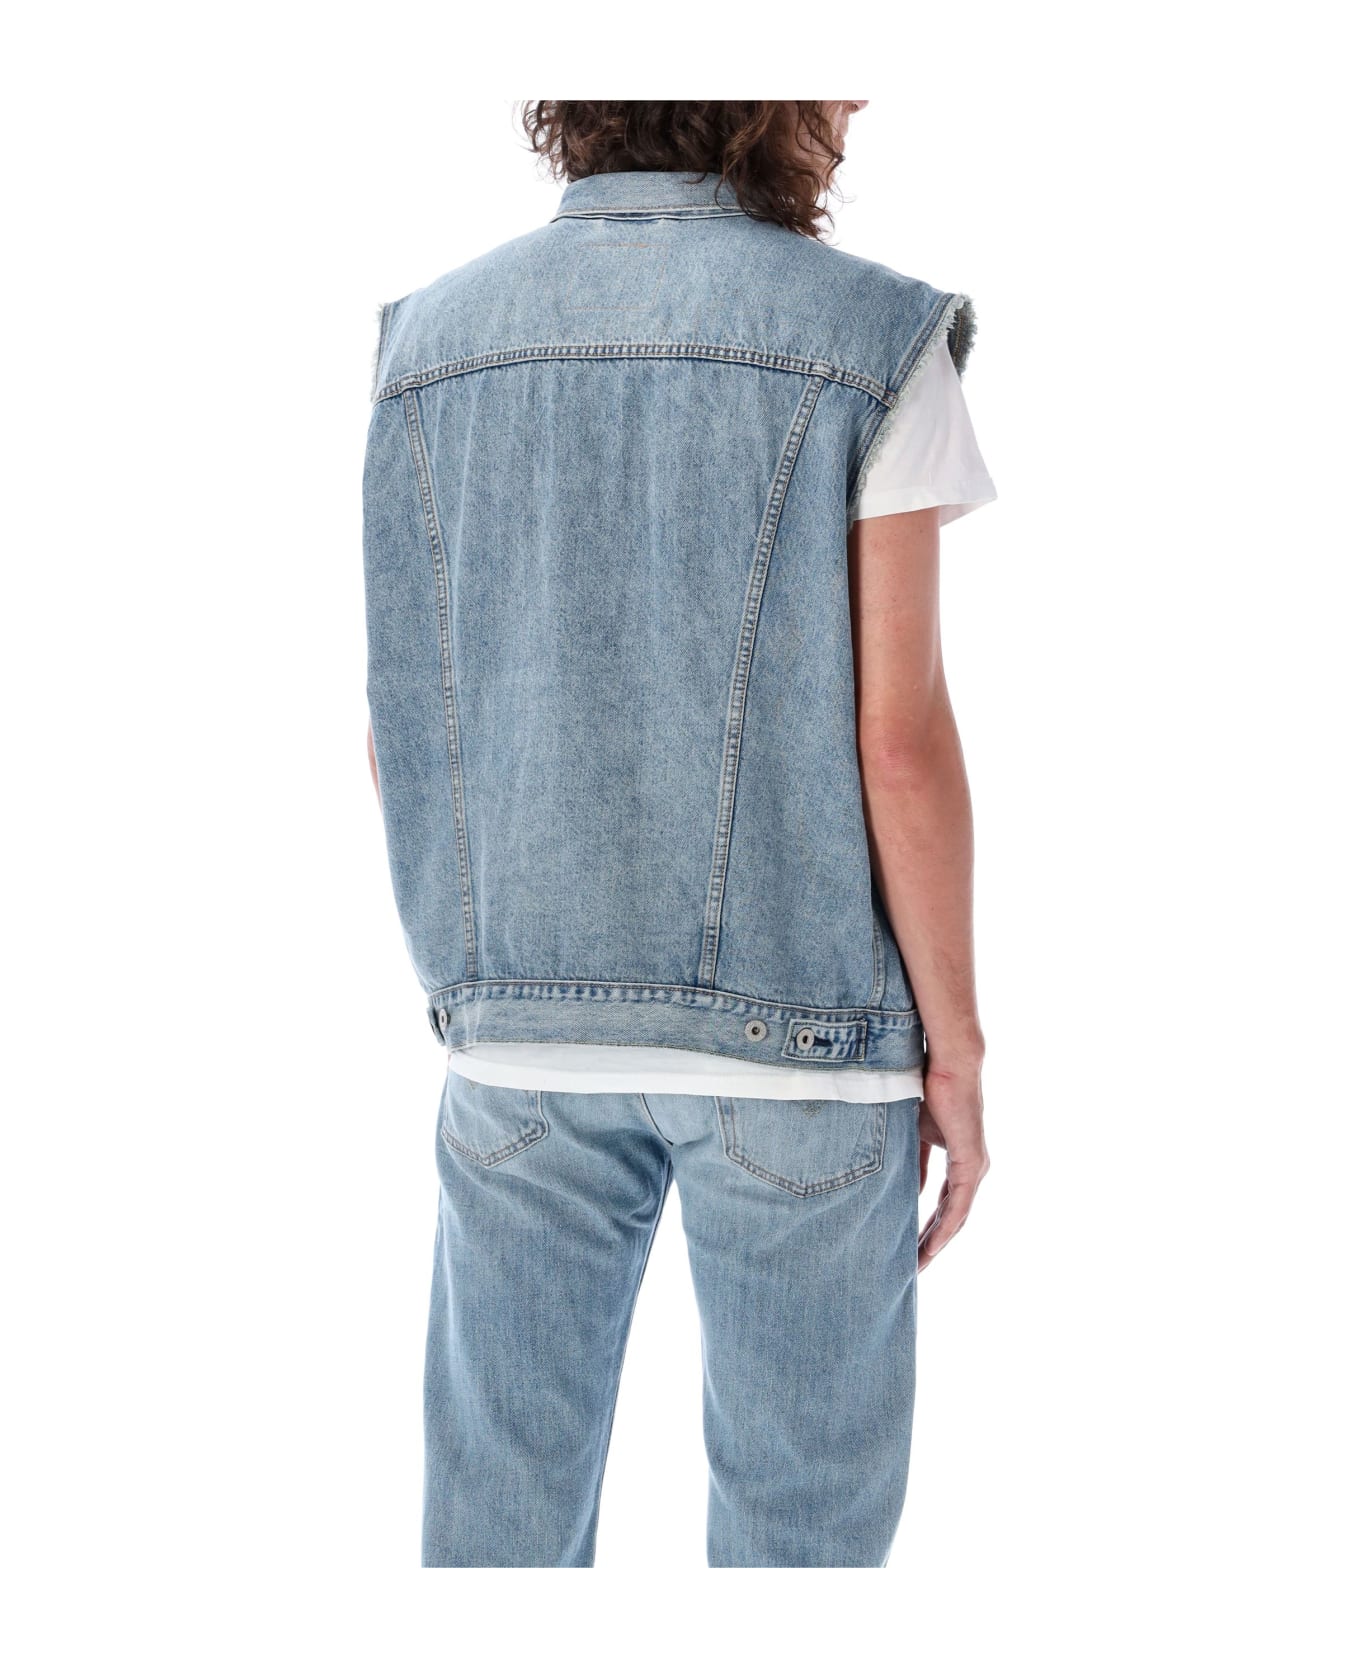 Levi's Denim Jeans Vest - MED BLUE